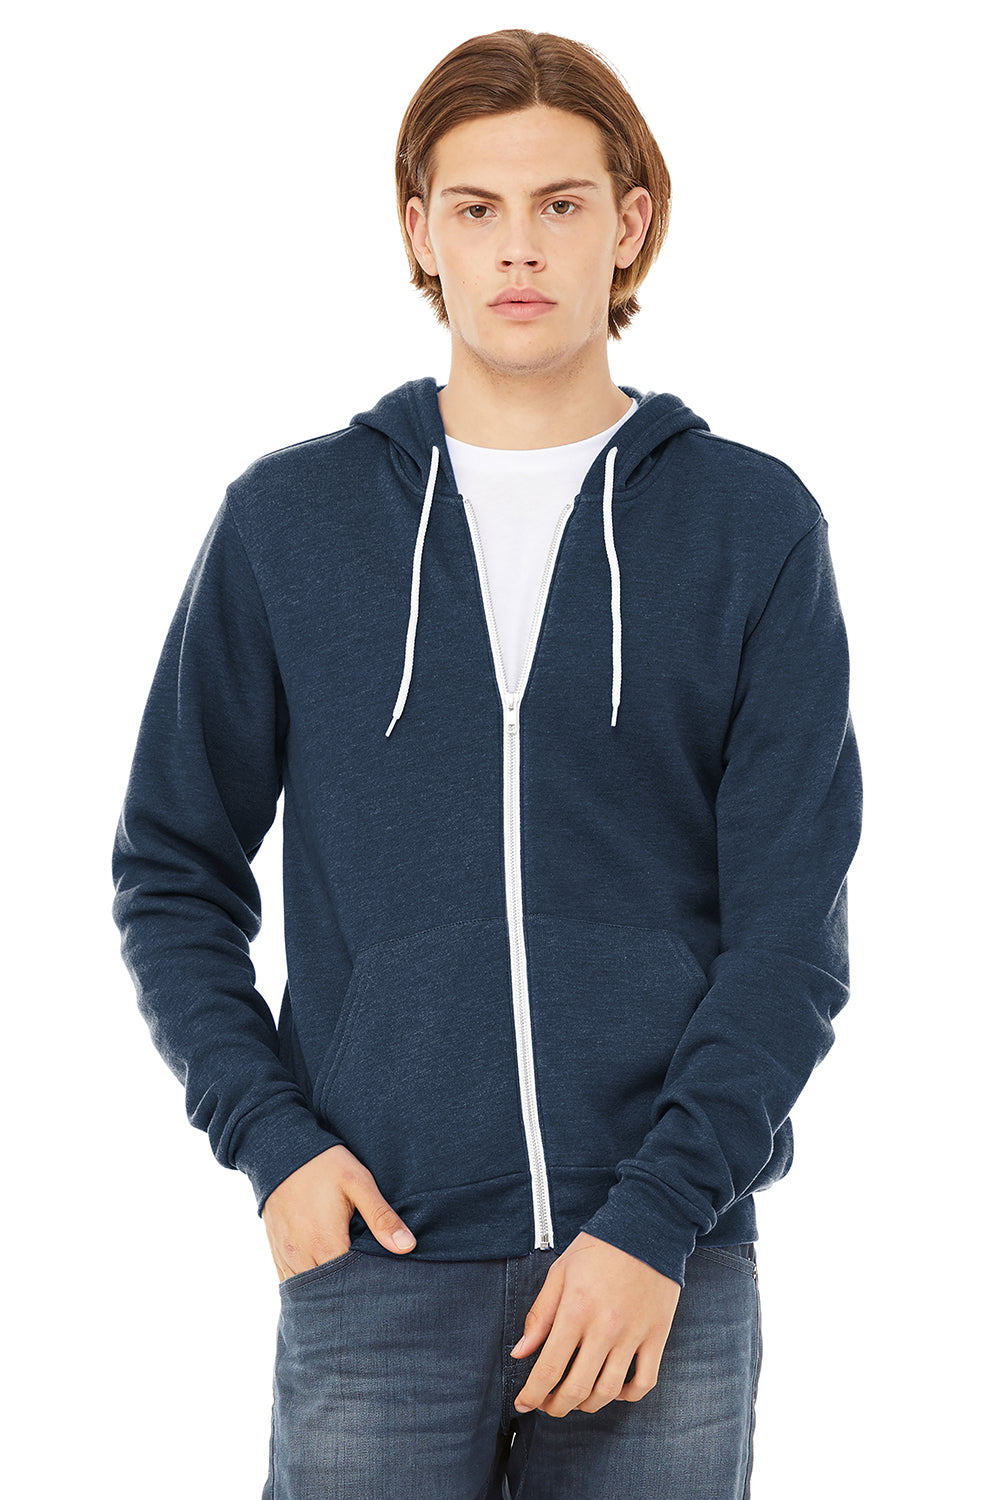 Bella + Canvas BC3739/3739 Mens Fleece Full Zip Hooded Sweatshirt Hoodie Heather Navy Blue Model Front